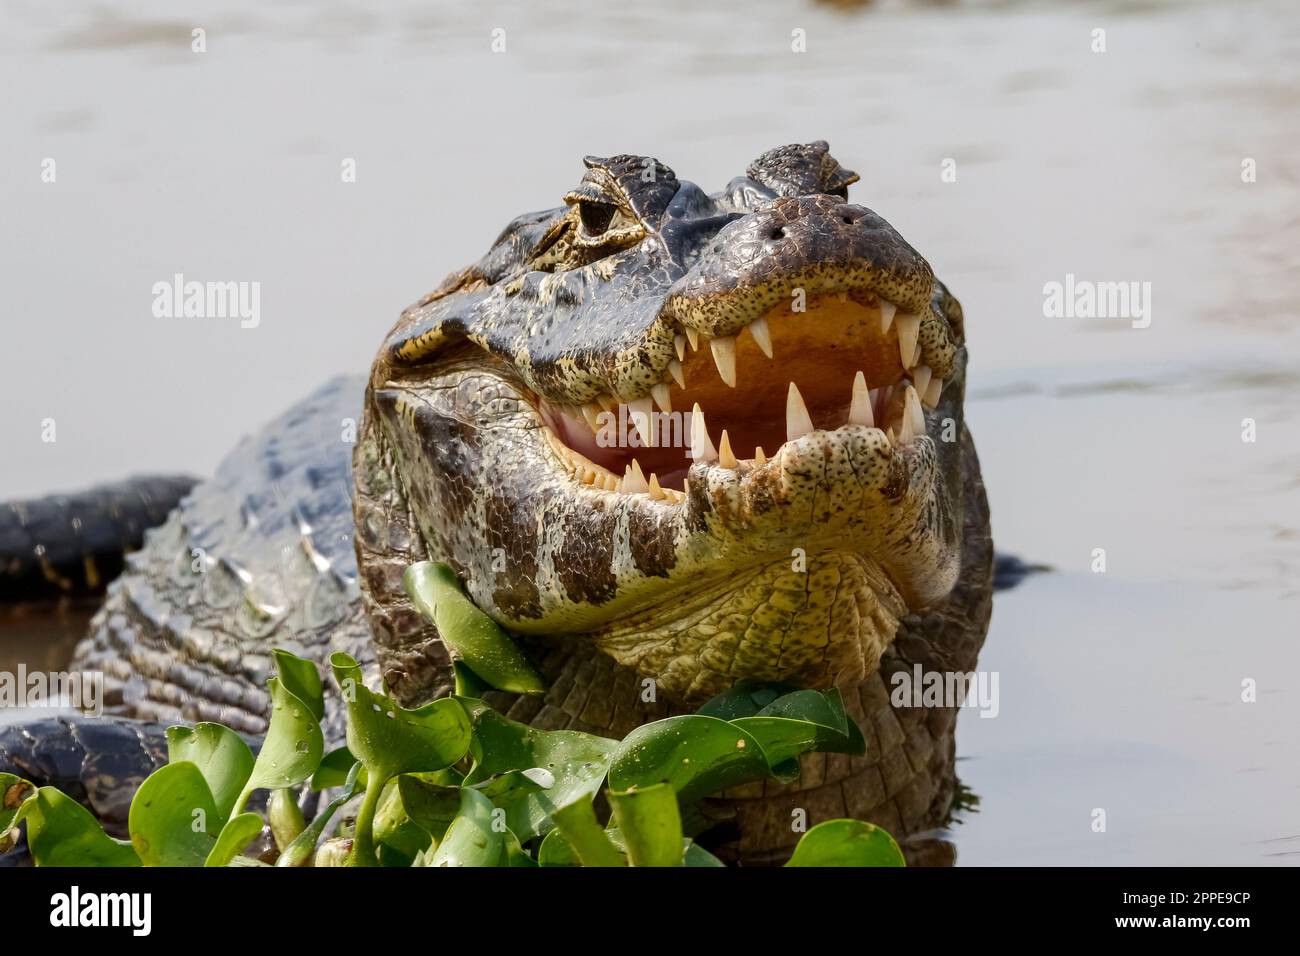 Primo piano di una macchina fotografica Yacare Caiman, metà in acqua con bocca aperta e denti visibili, Pantanal Wetlands, Mato Grosso, Brasile Foto Stock